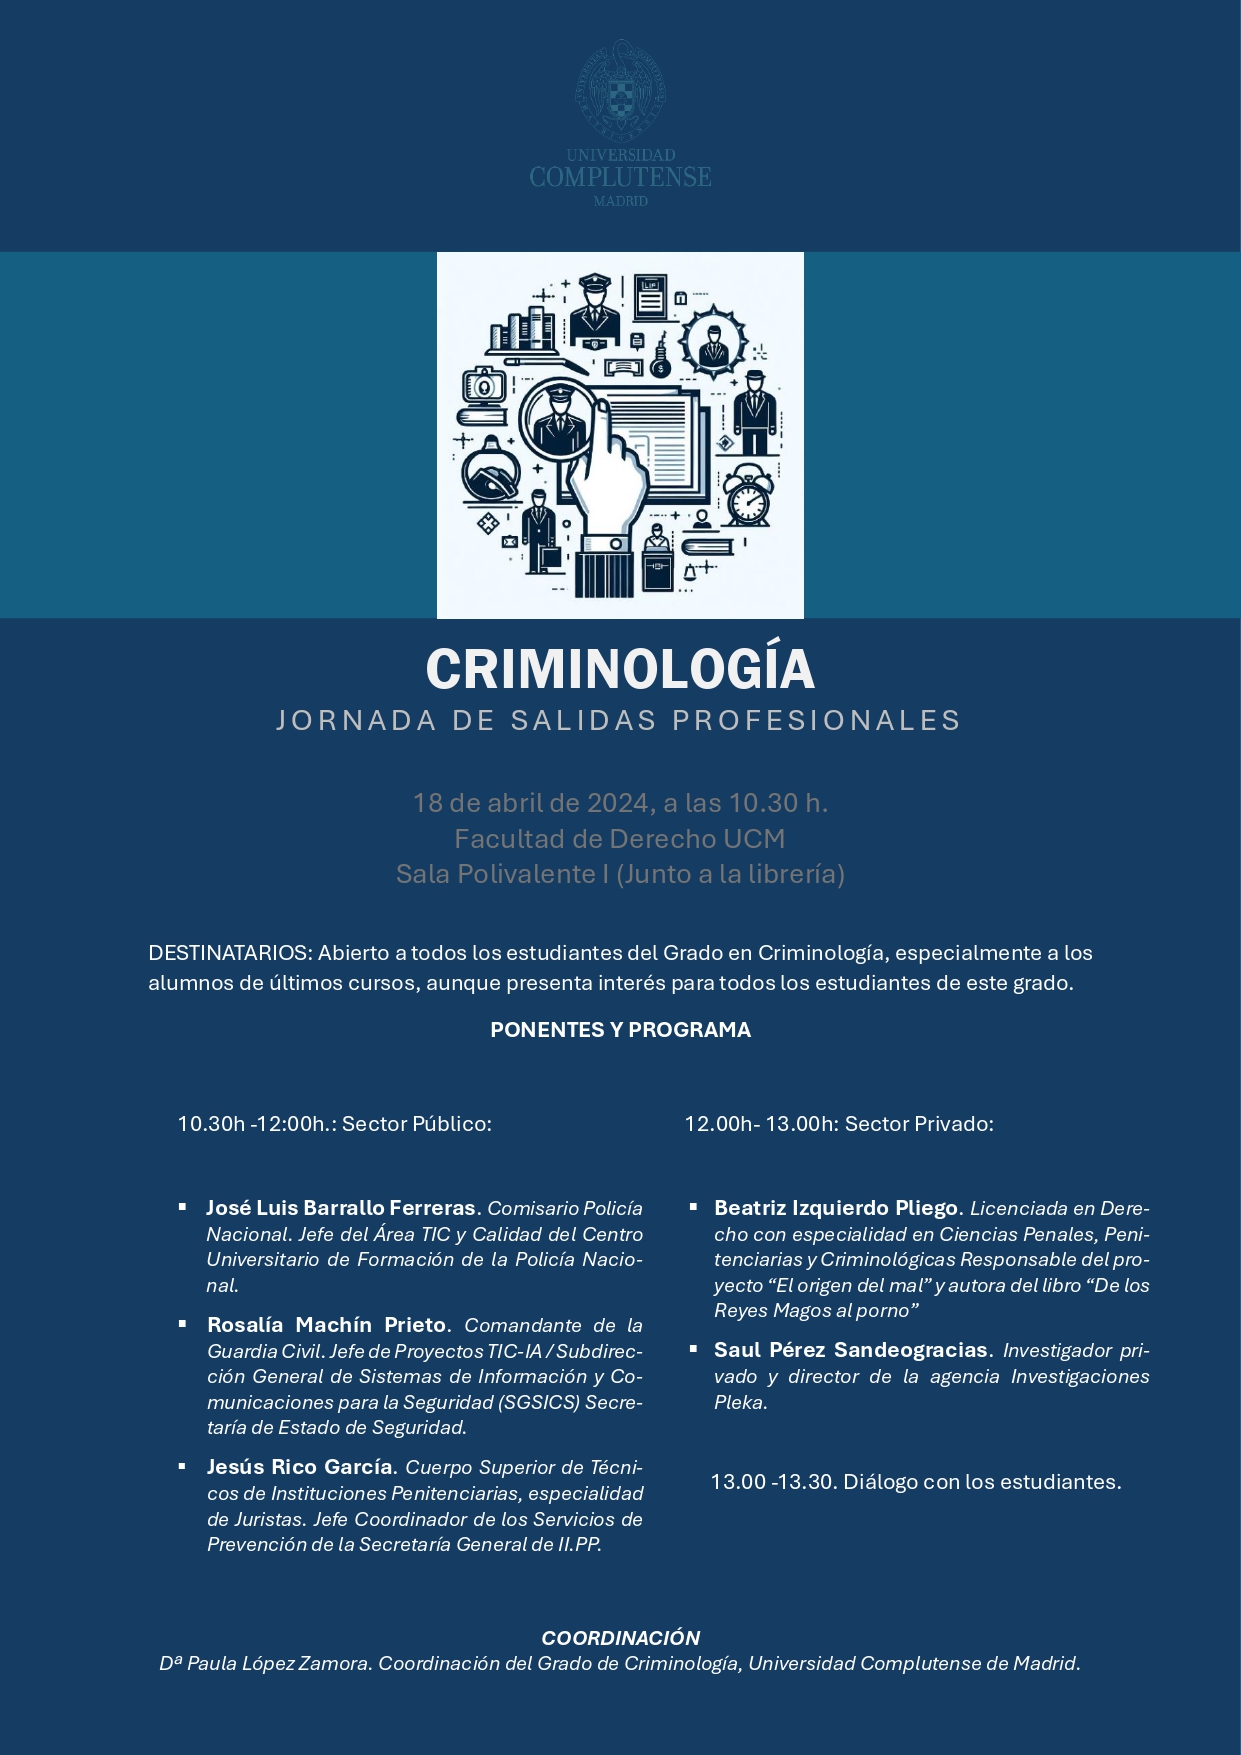 JORNADA DE SALIDAS PROFESIONALES para estudiantes de Criminología (18 de abril, Aula Polivalente I) 